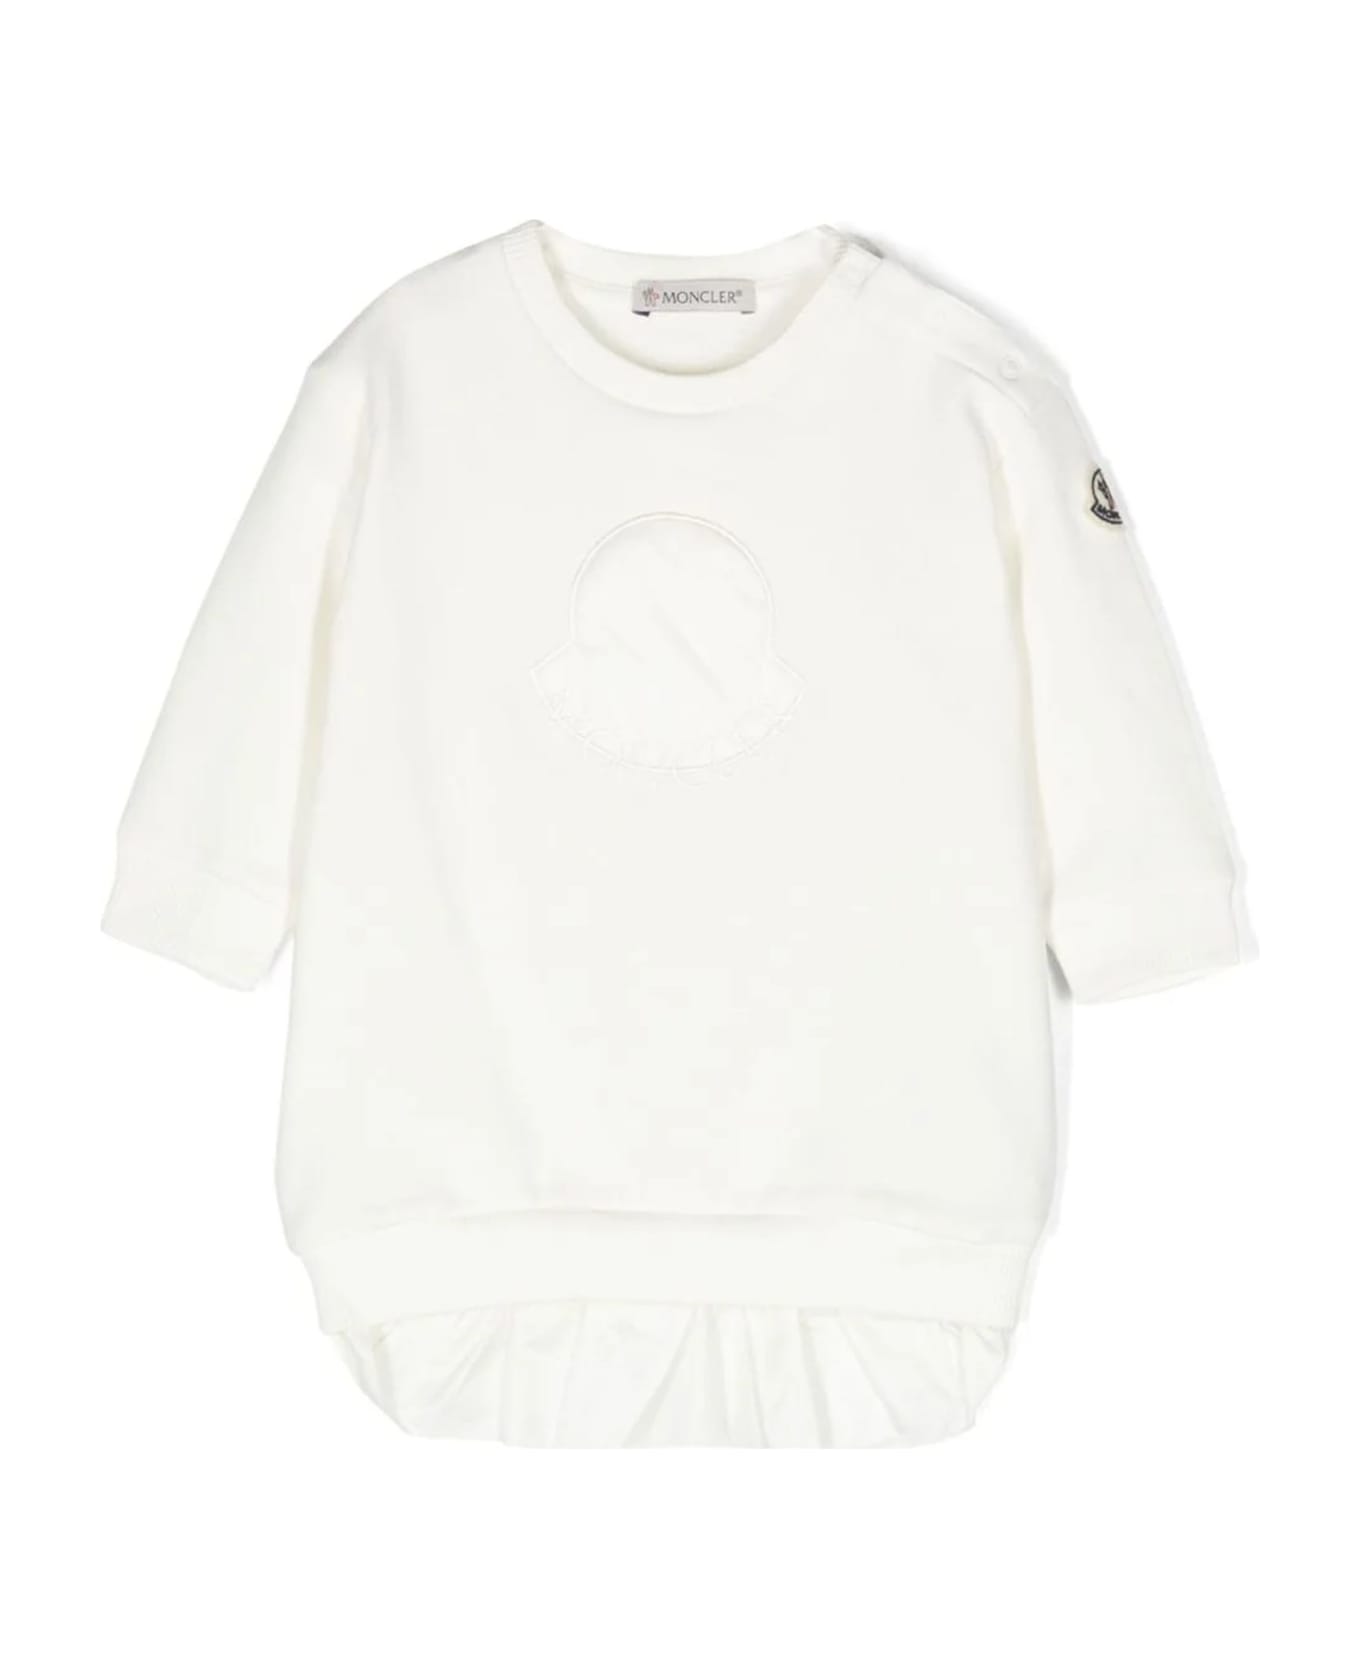 Moncler White Cotton Blend Sweatshirt Dress - Bianco